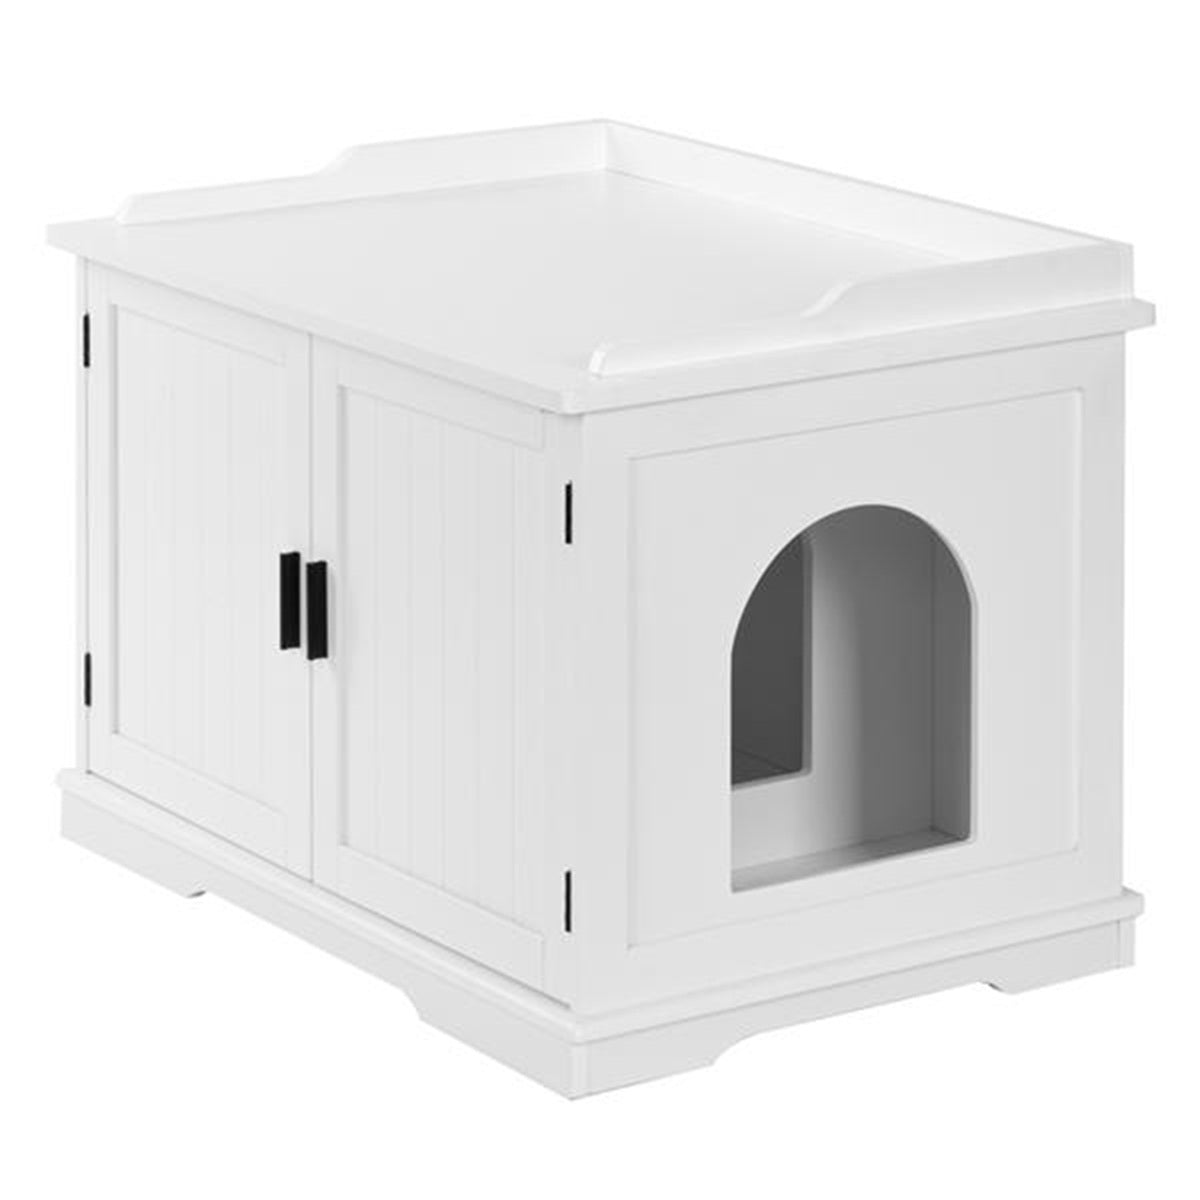 Cat Litter Box Enclosure Cabinet, Large Wooden Indoor Storage Bench Furniture with Double Door, Wooden Cat Litter Cabinet for Living Room, Bedroom, Bathroom